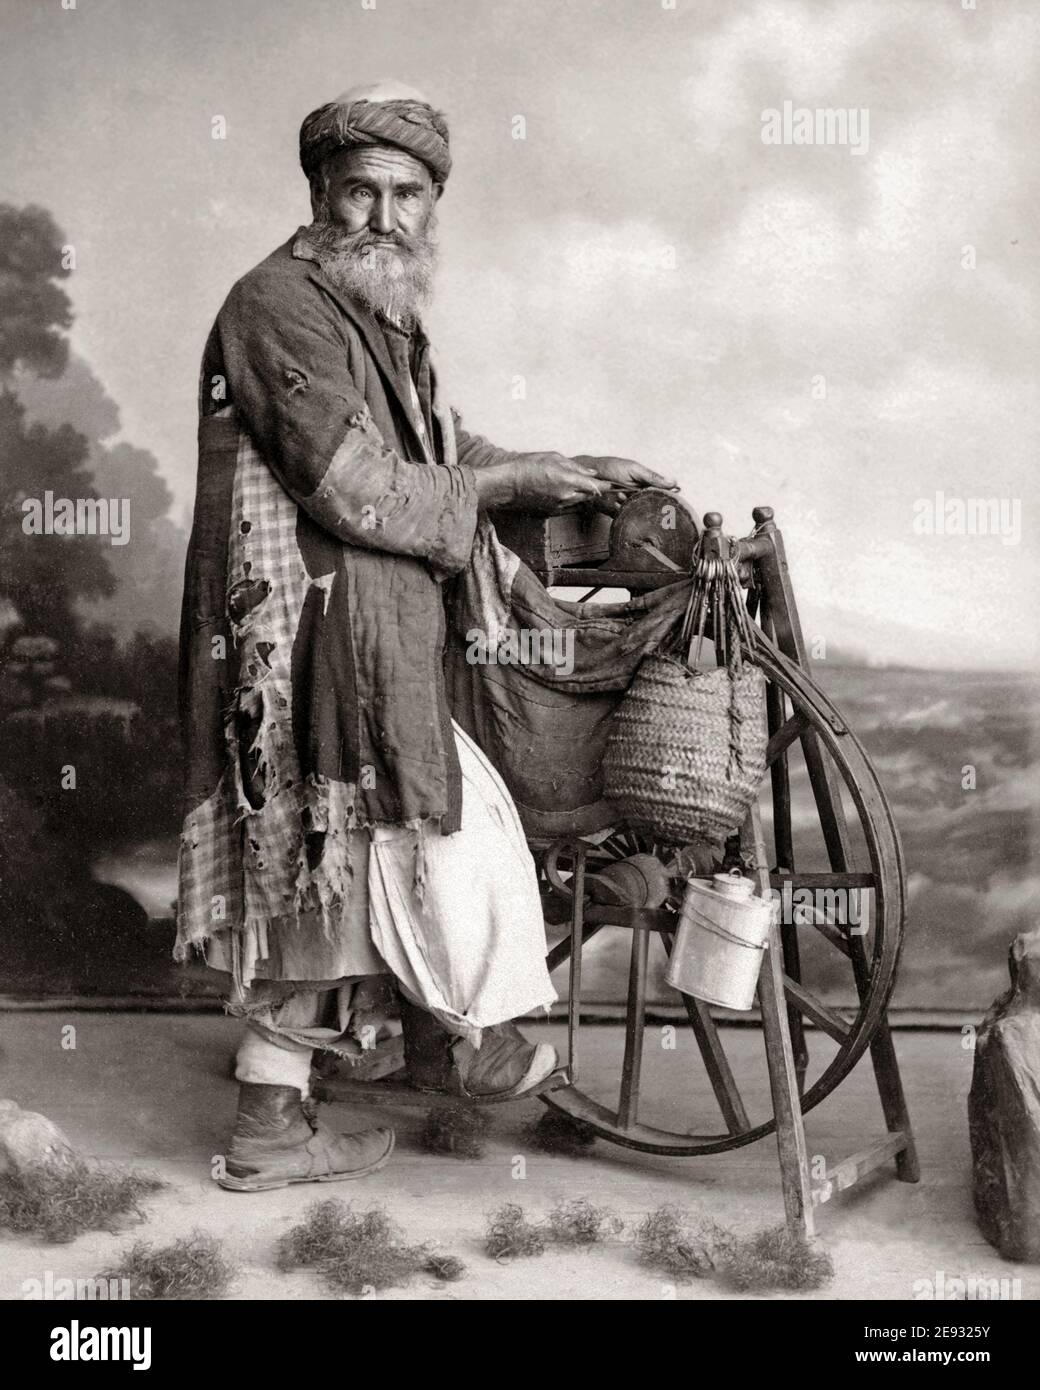 Photographie de la fin du XIXe siècle - broyeur de couteaux égyptien, homme aiguisant les couteaux avec une pierre entraînée par roue, Égypte Banque D'Images